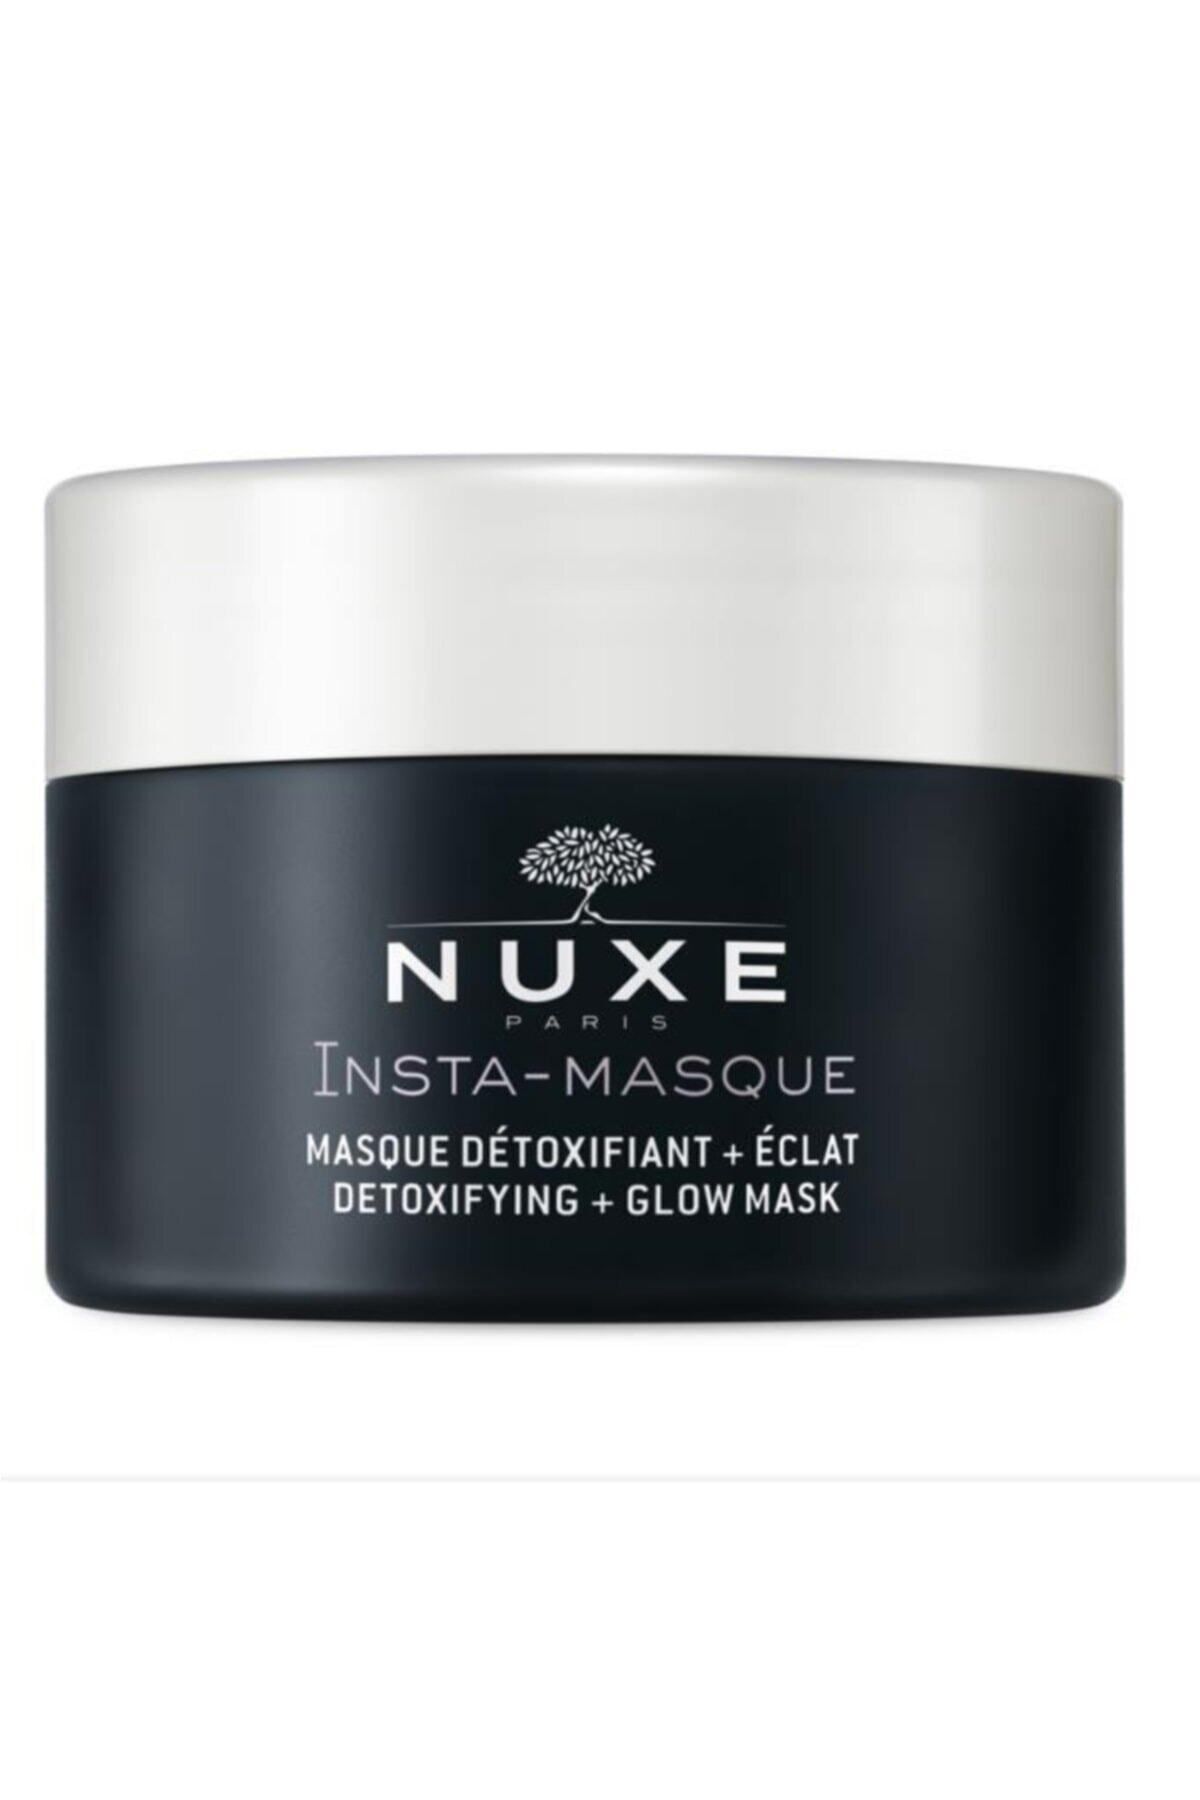 Nuxe ماسک تقویت کننده پوستی بازسازی کننده گلو Insta DetoxIFYING 50 میلی لیتر